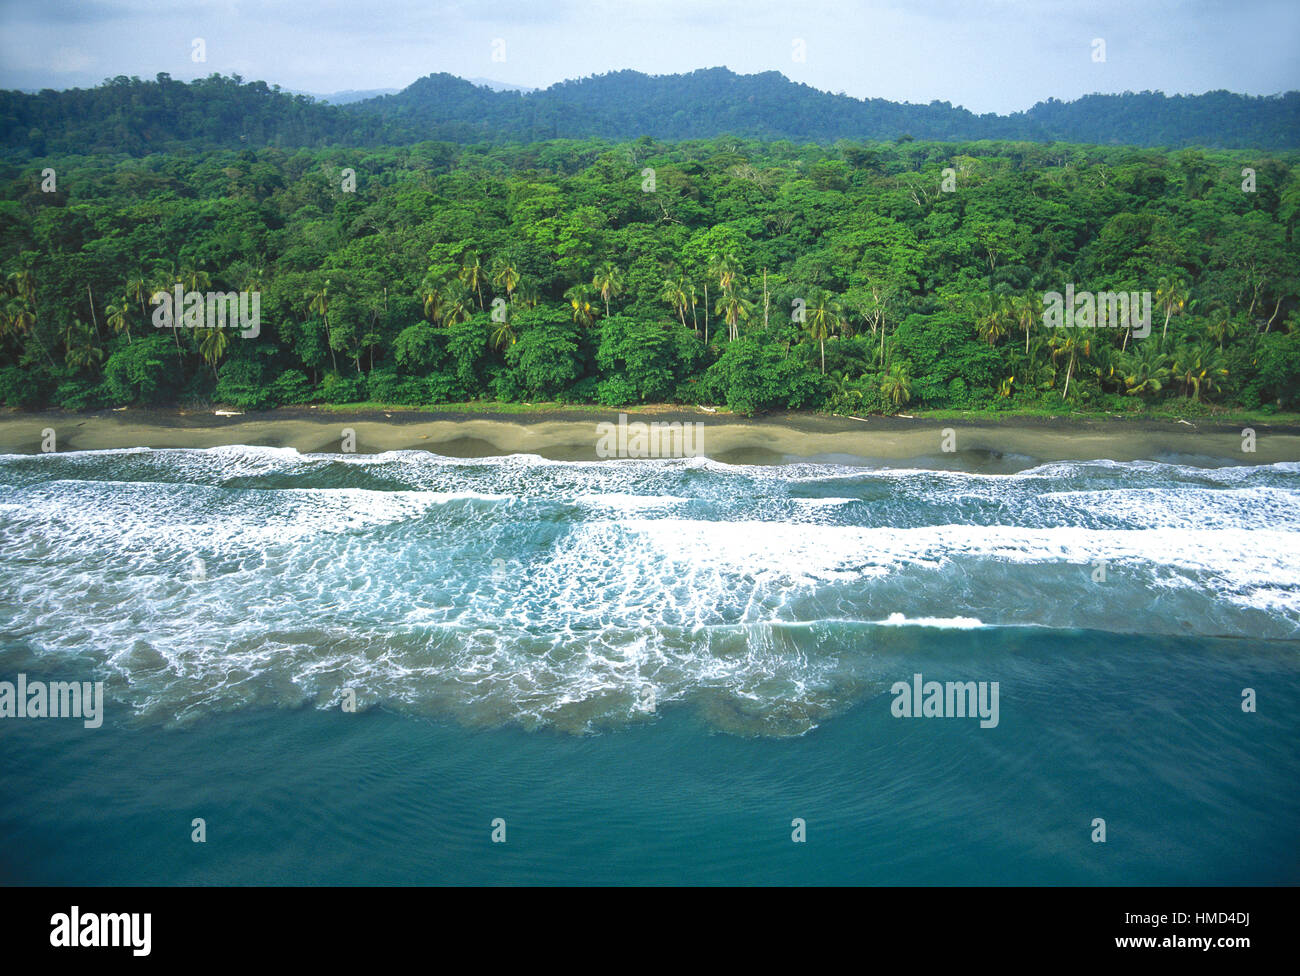 Foto aeree della costa caraibica vicino a Puerto Viejo, Costa Rica Foto Stock